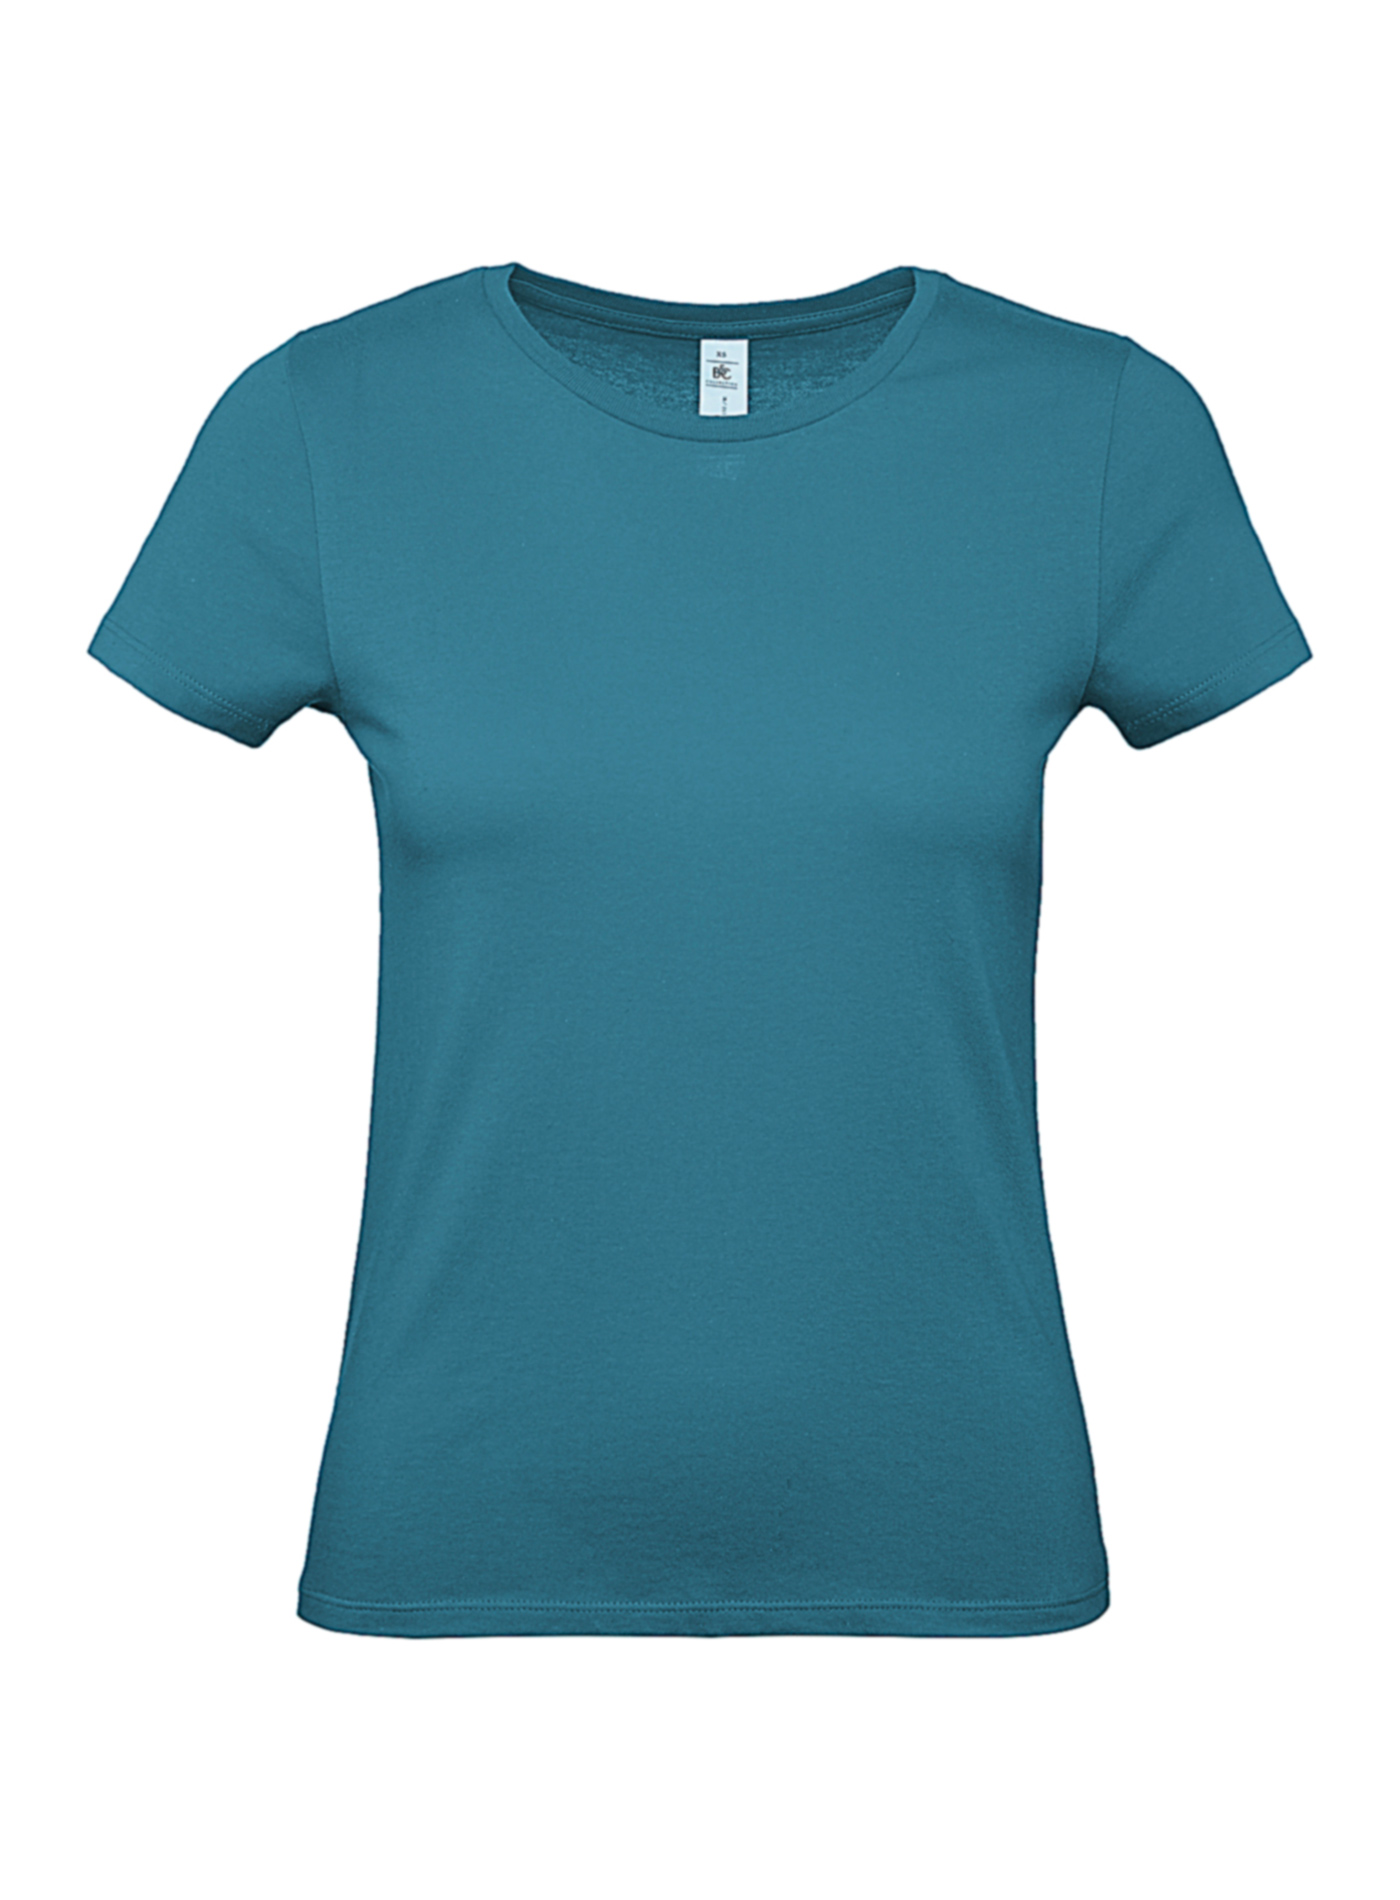 Dámské tričko B&C - Modrozelená S